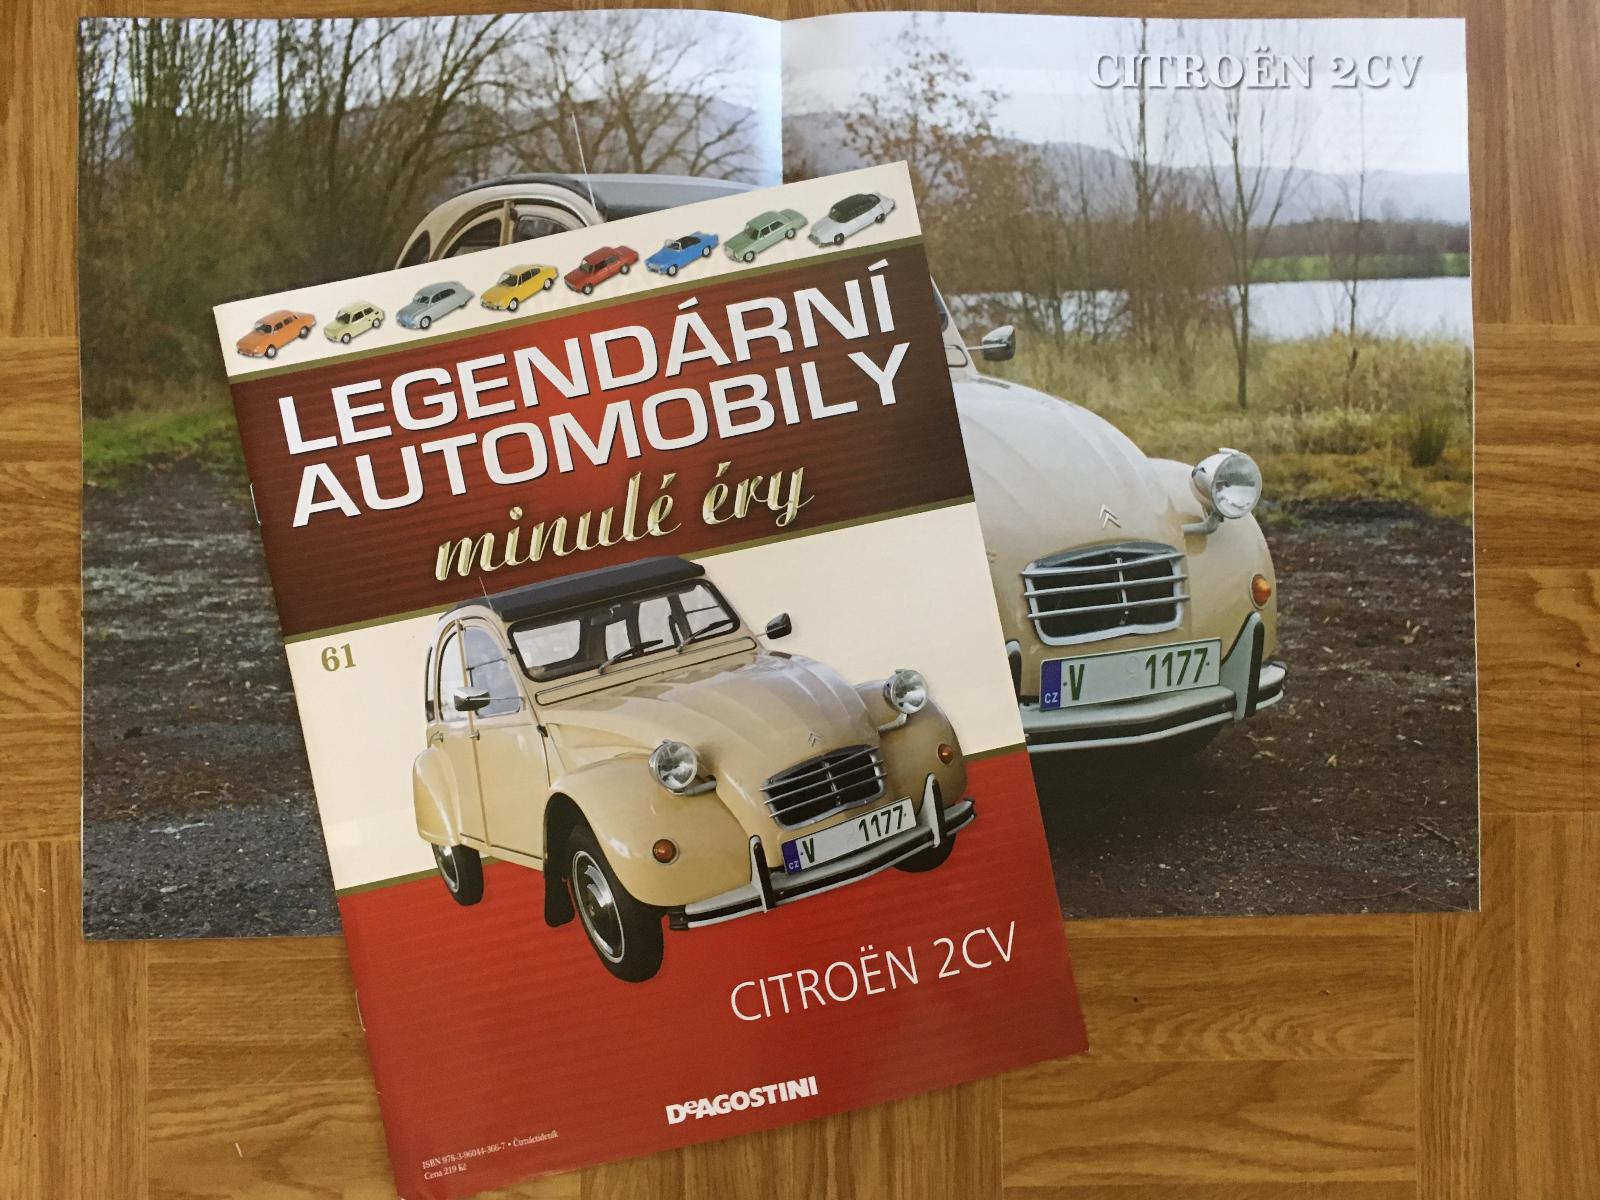 časopis Legendární automobily minulé éry č. 61 Citroen 2CV bez modelu! - Knihy a časopisy